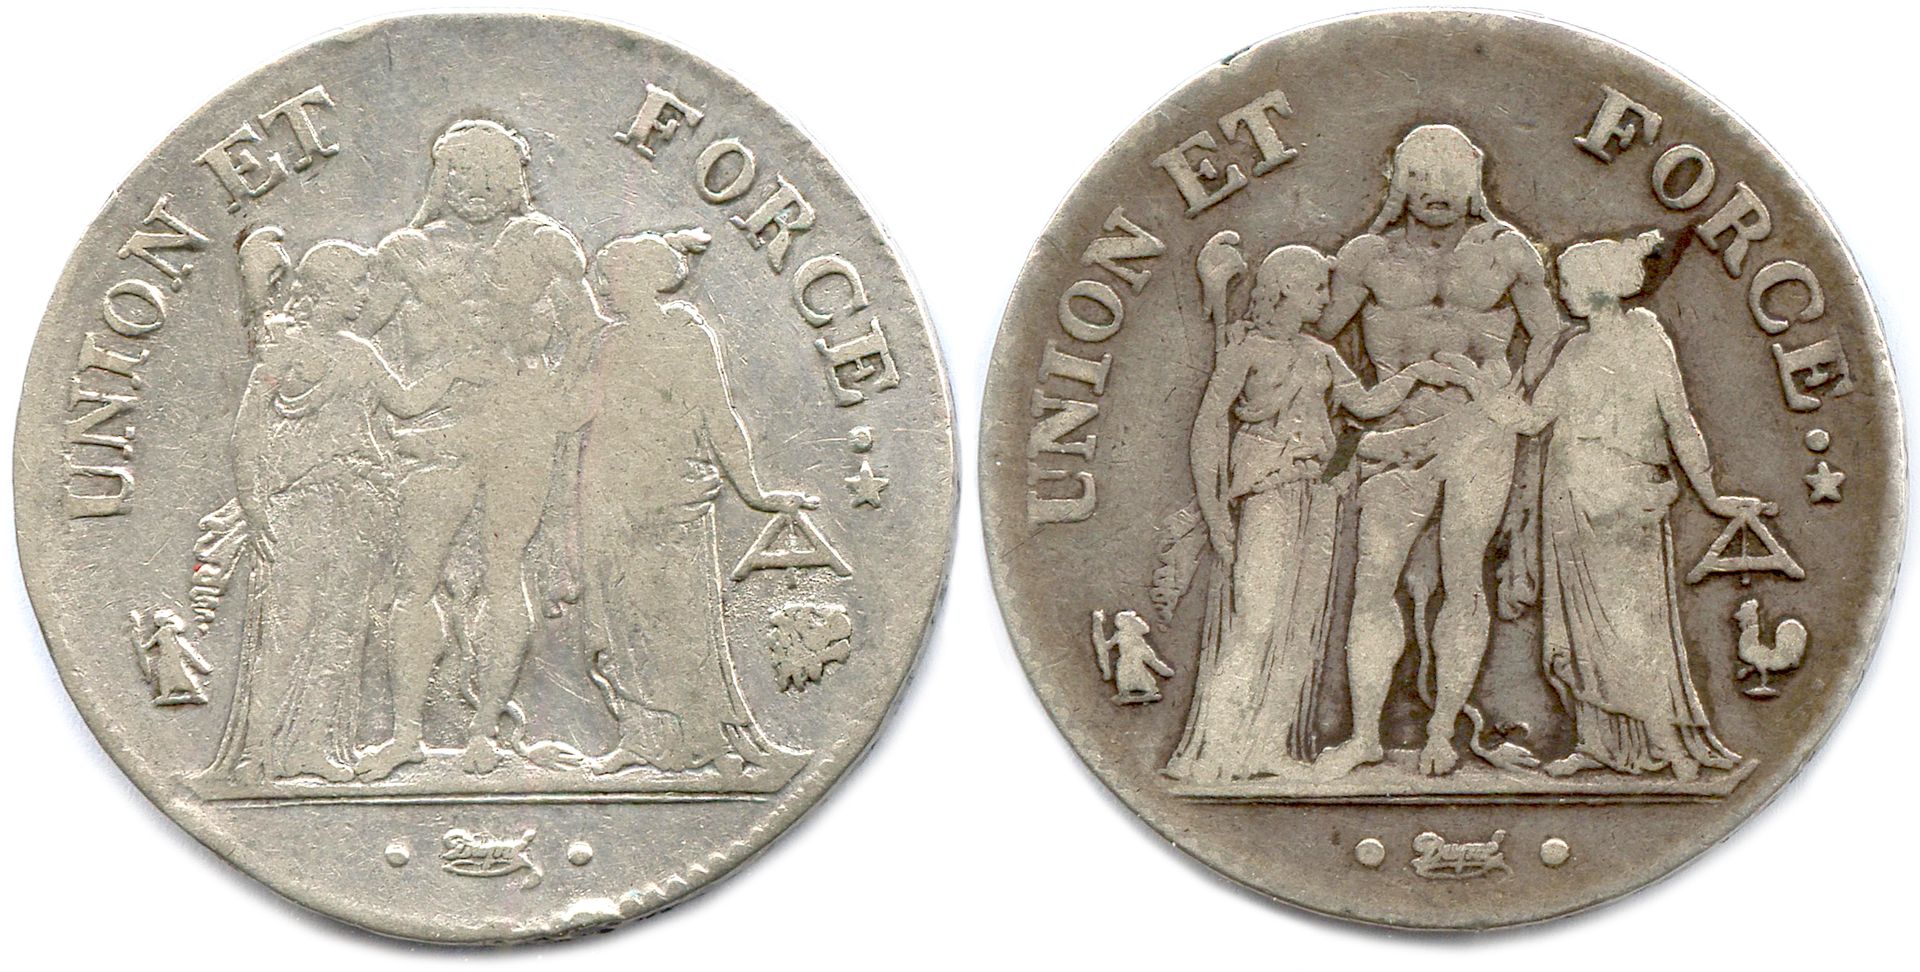 Null DIRETTORATO 23 ottobre 1795 - 10 novembre 1799

Due monete: 5 franchi Ercol&hellip;